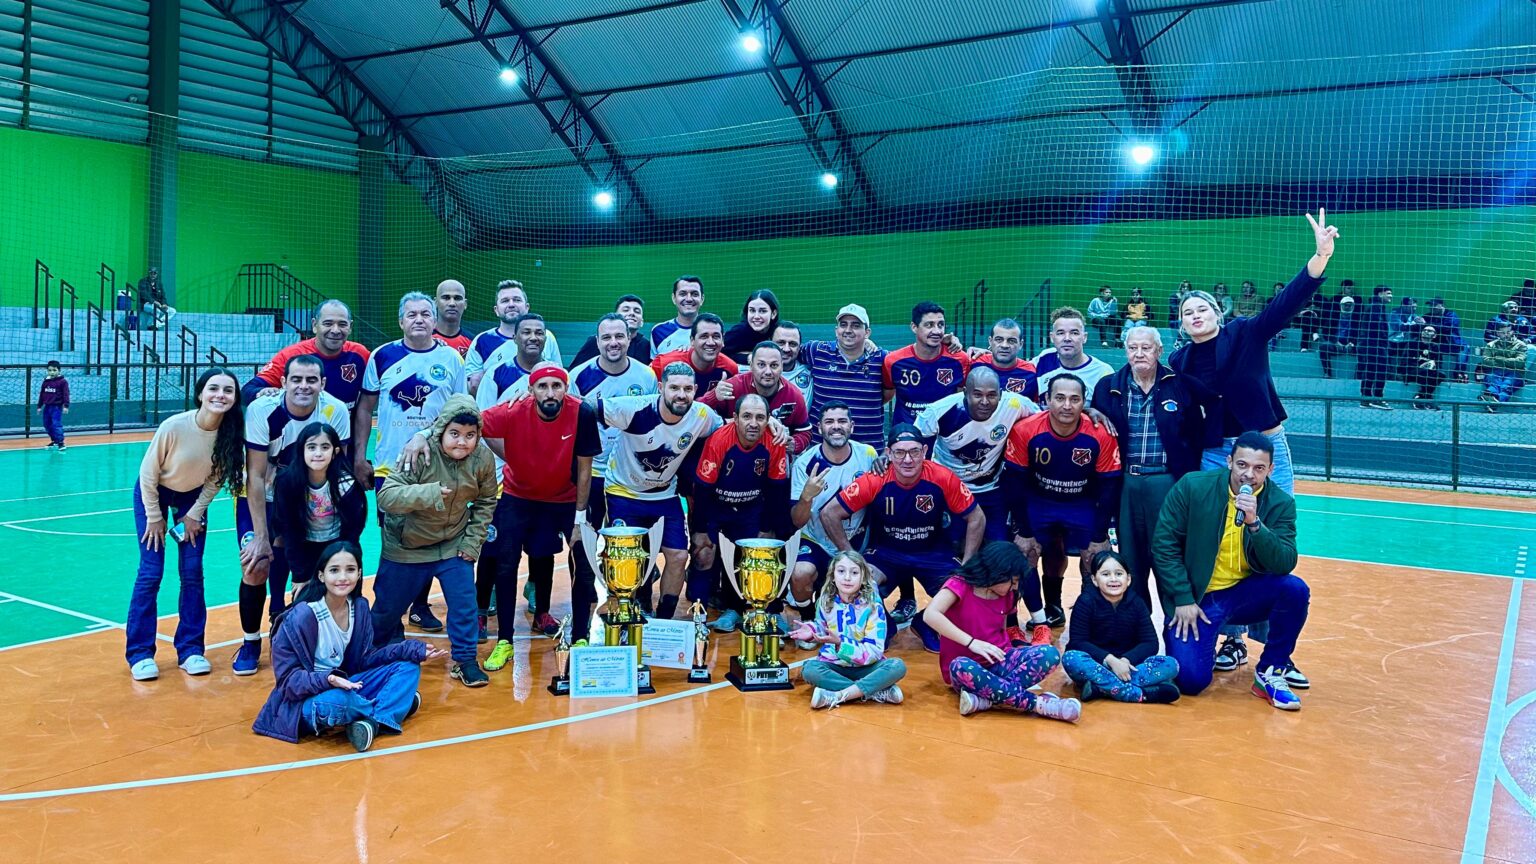 Equipe Transportadora Oliveira é campeã do Campeonato de Futsal Máster